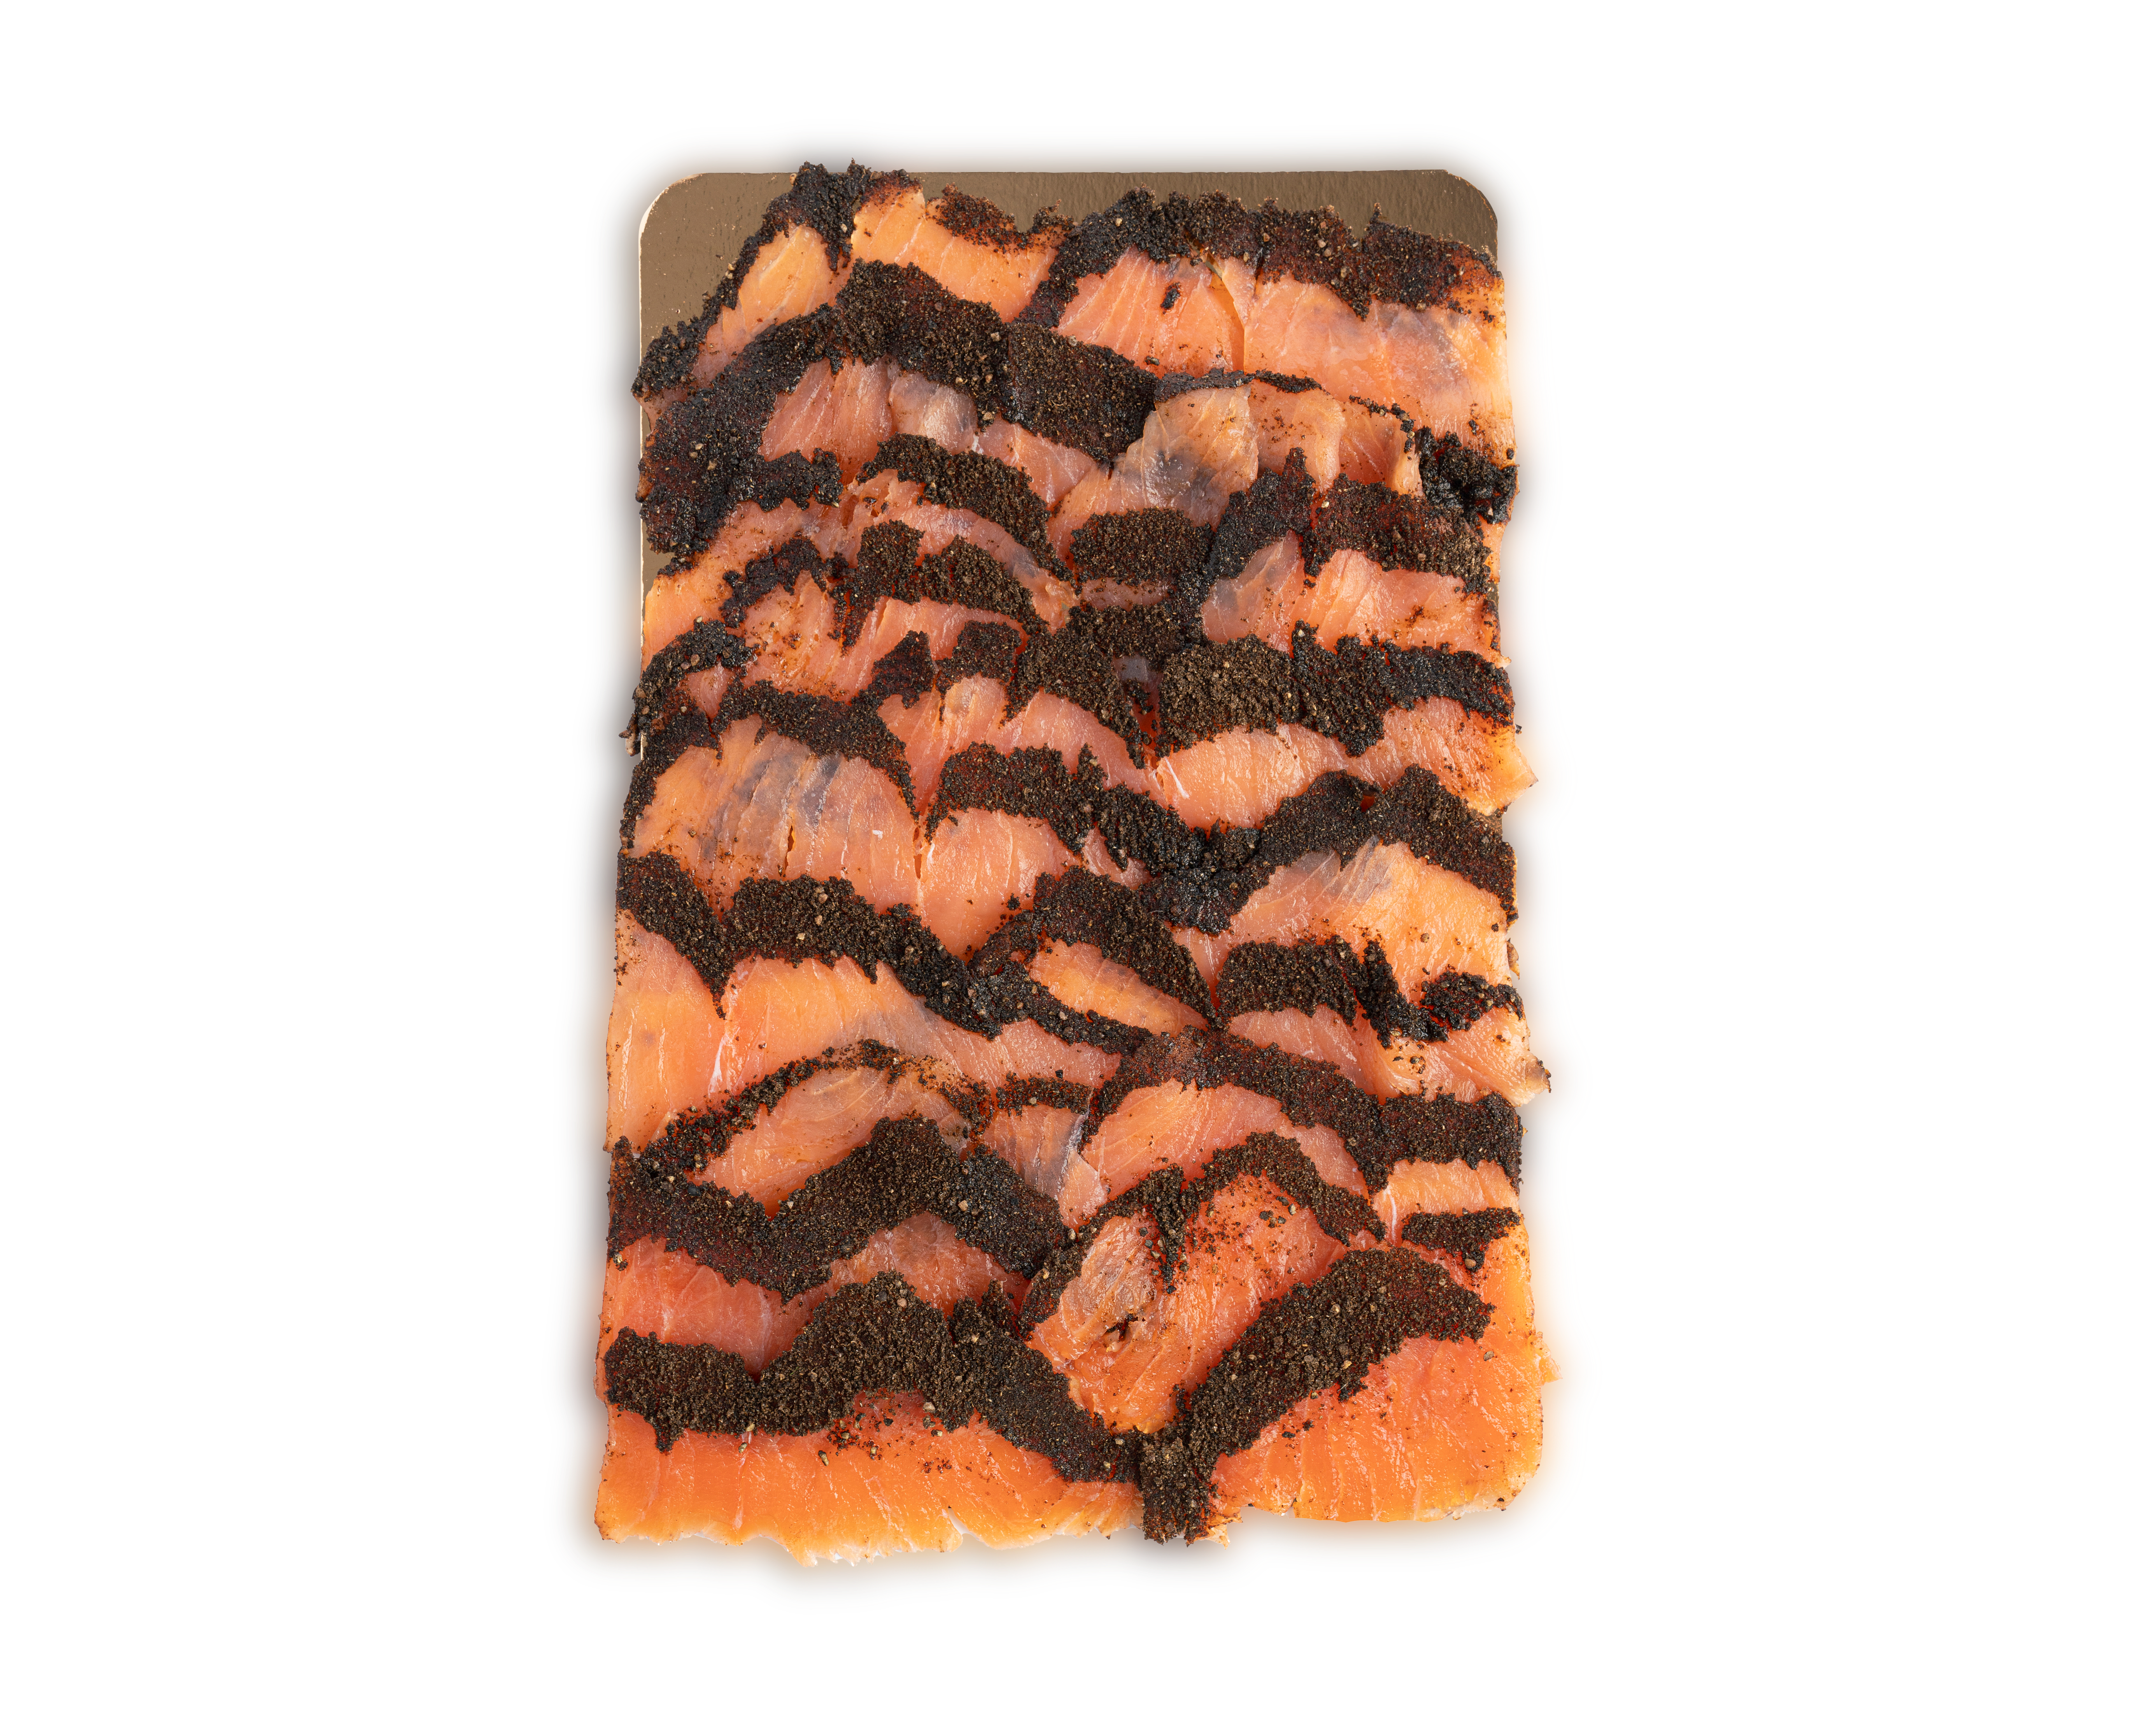 Acme Smoked Fish pastrami smoked salmon